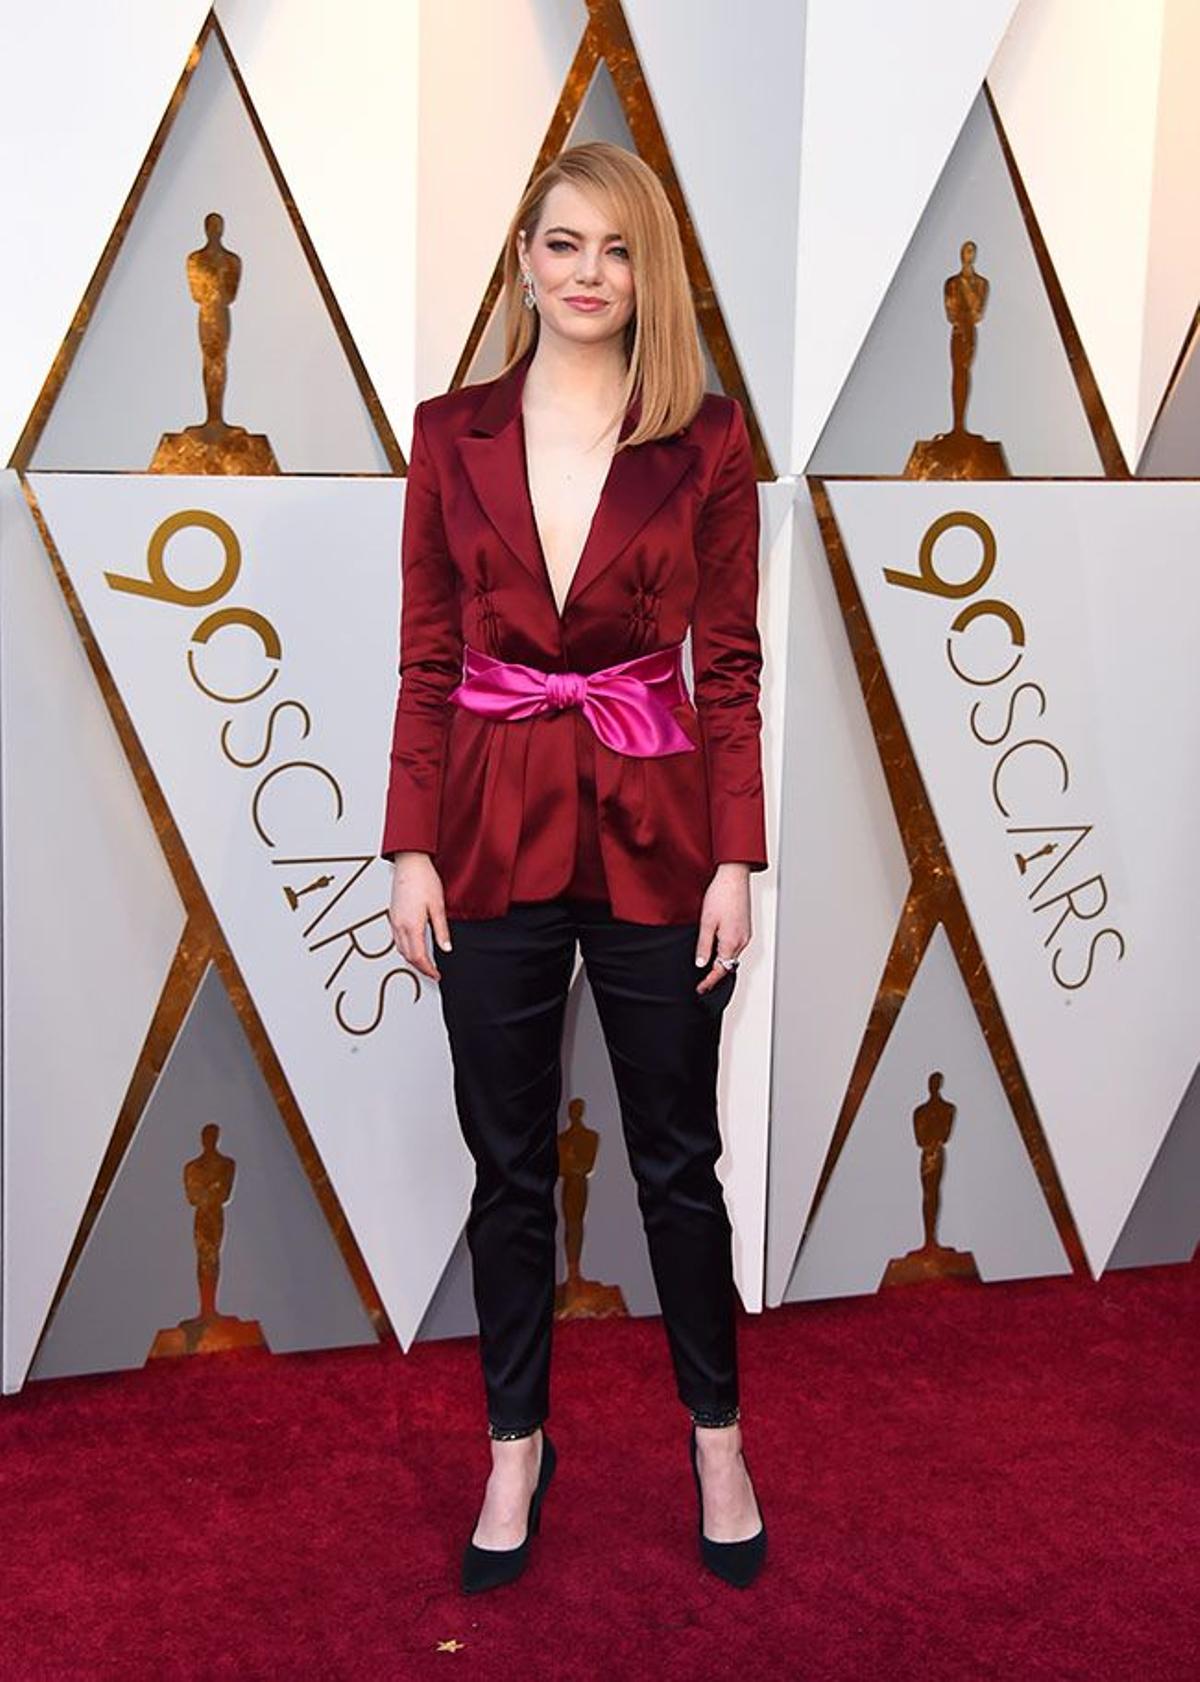 Premios Oscar 2018, Emma Stone